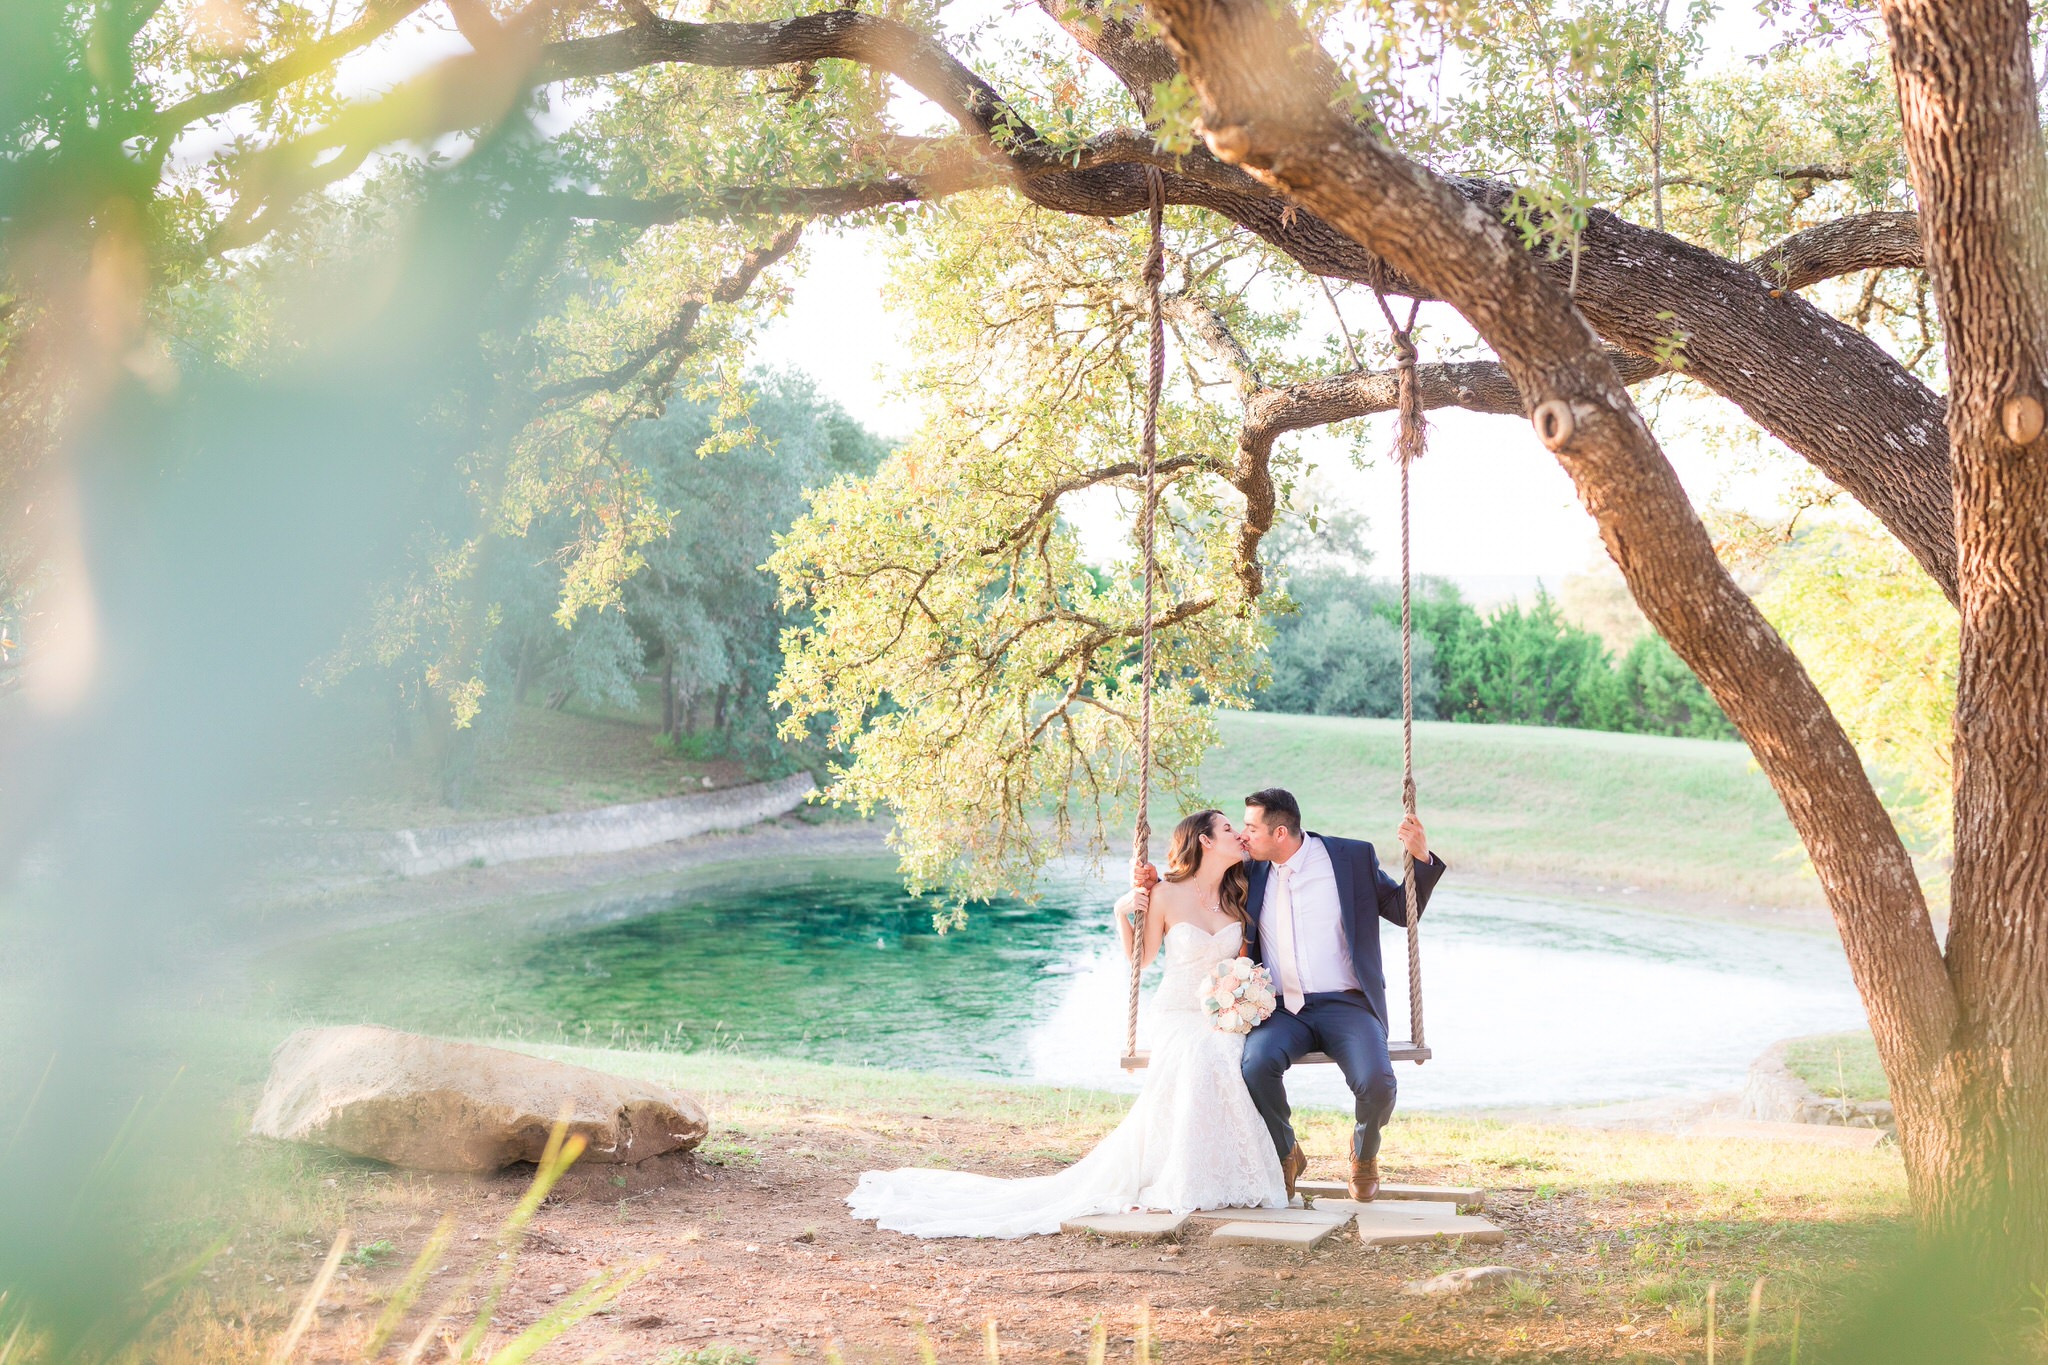 Wedding Portraits at Kendall Point by Dawn Elizabeth Studios, San Antonio Wedding Photographer